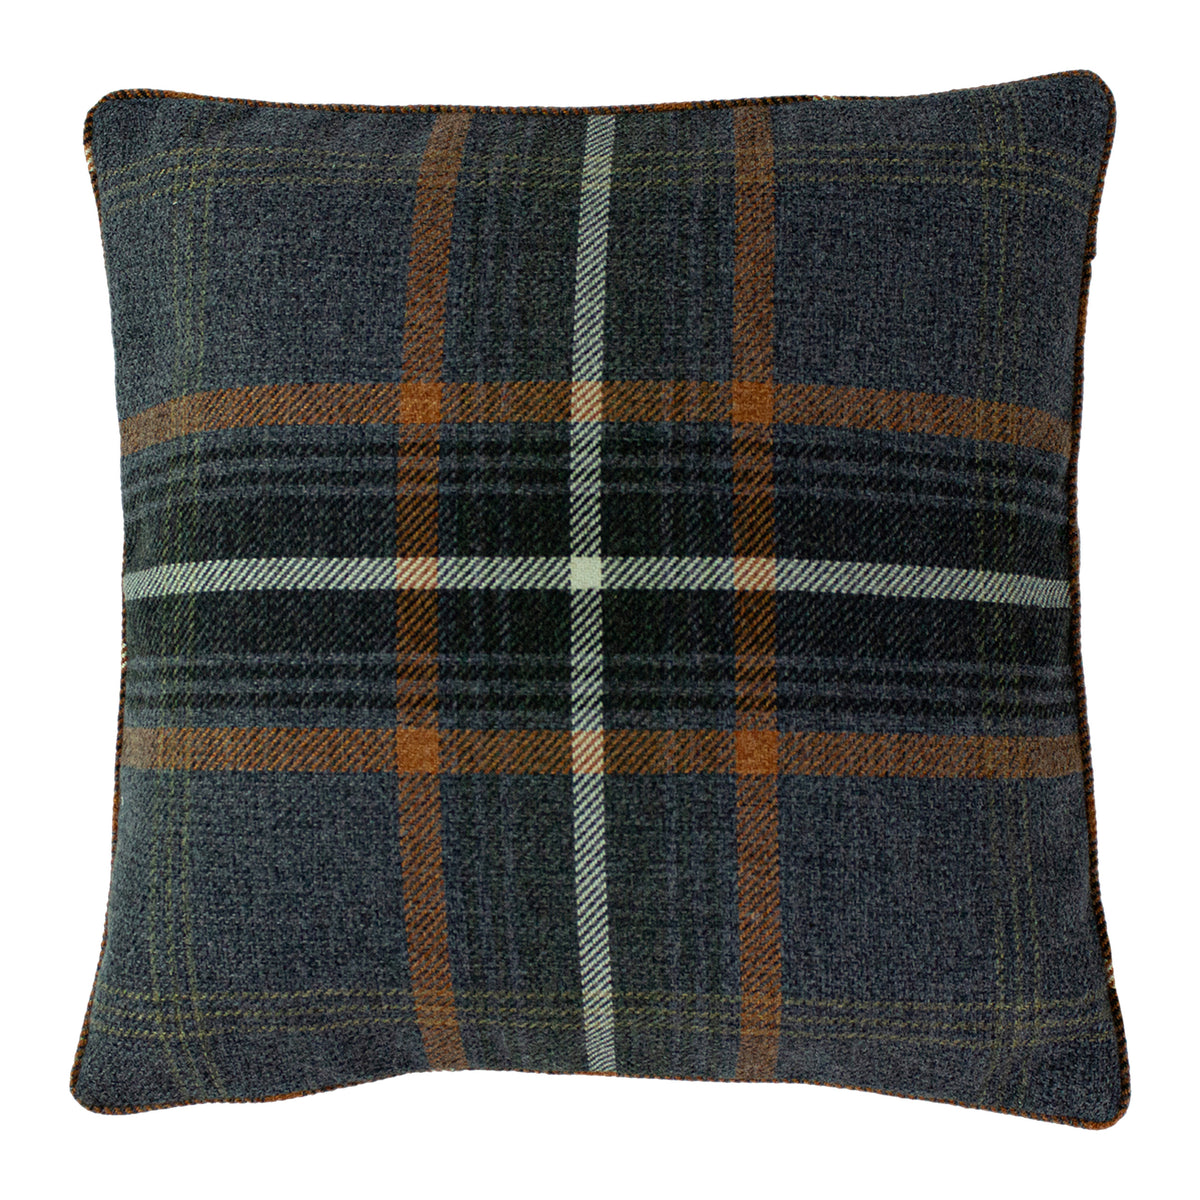 HHF Tartan Beige - Velvet Upholstery Fabric